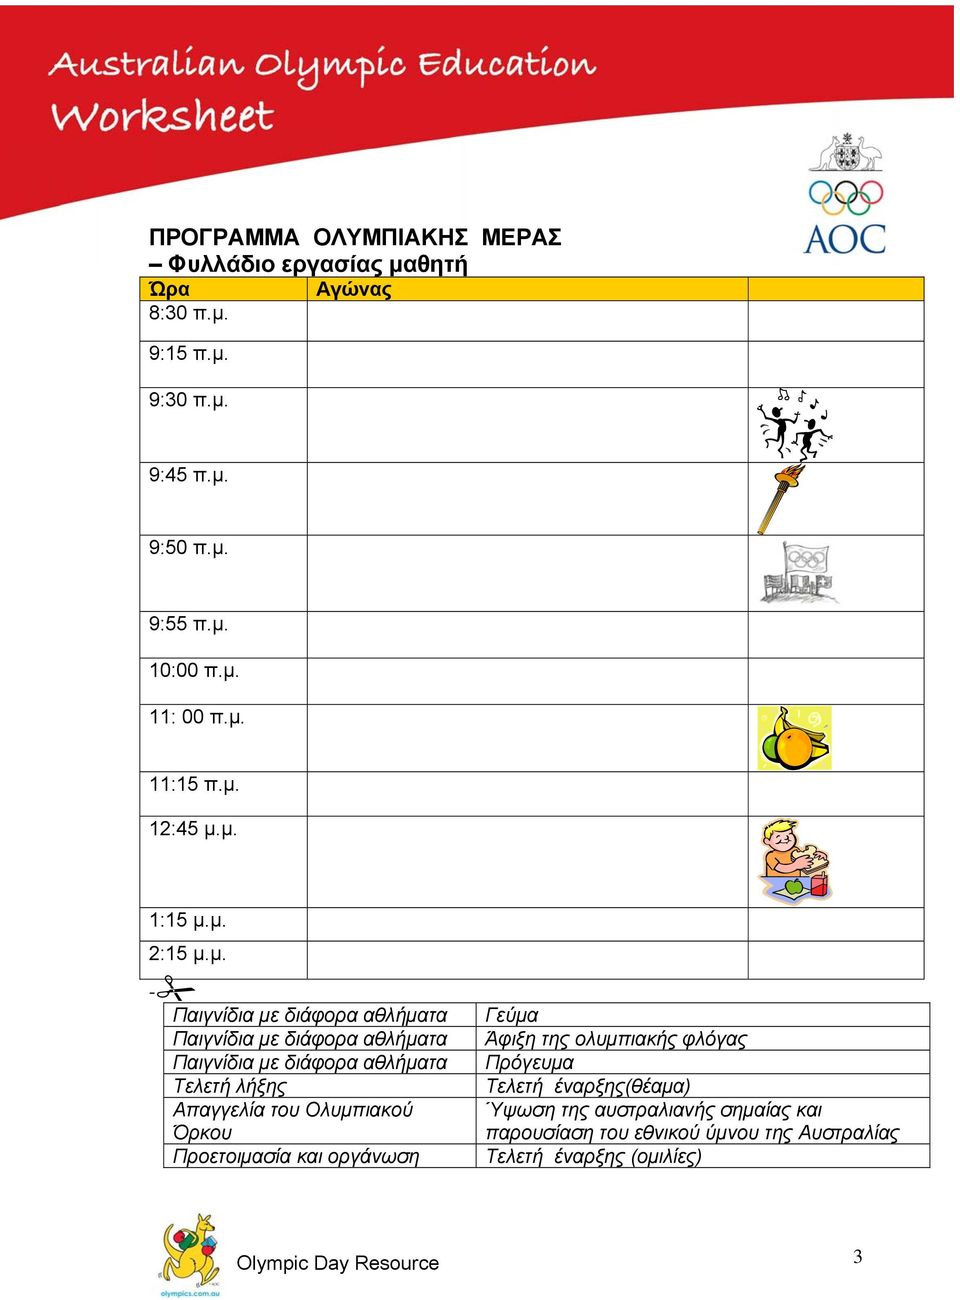 Όρκου Προετοιμασία και οργάνωση Γεύμα Άφιξη της ολυμπιακής φλόγας Πρόγευμα Τελετή έναρξης(θέαμα) Ύψωση της